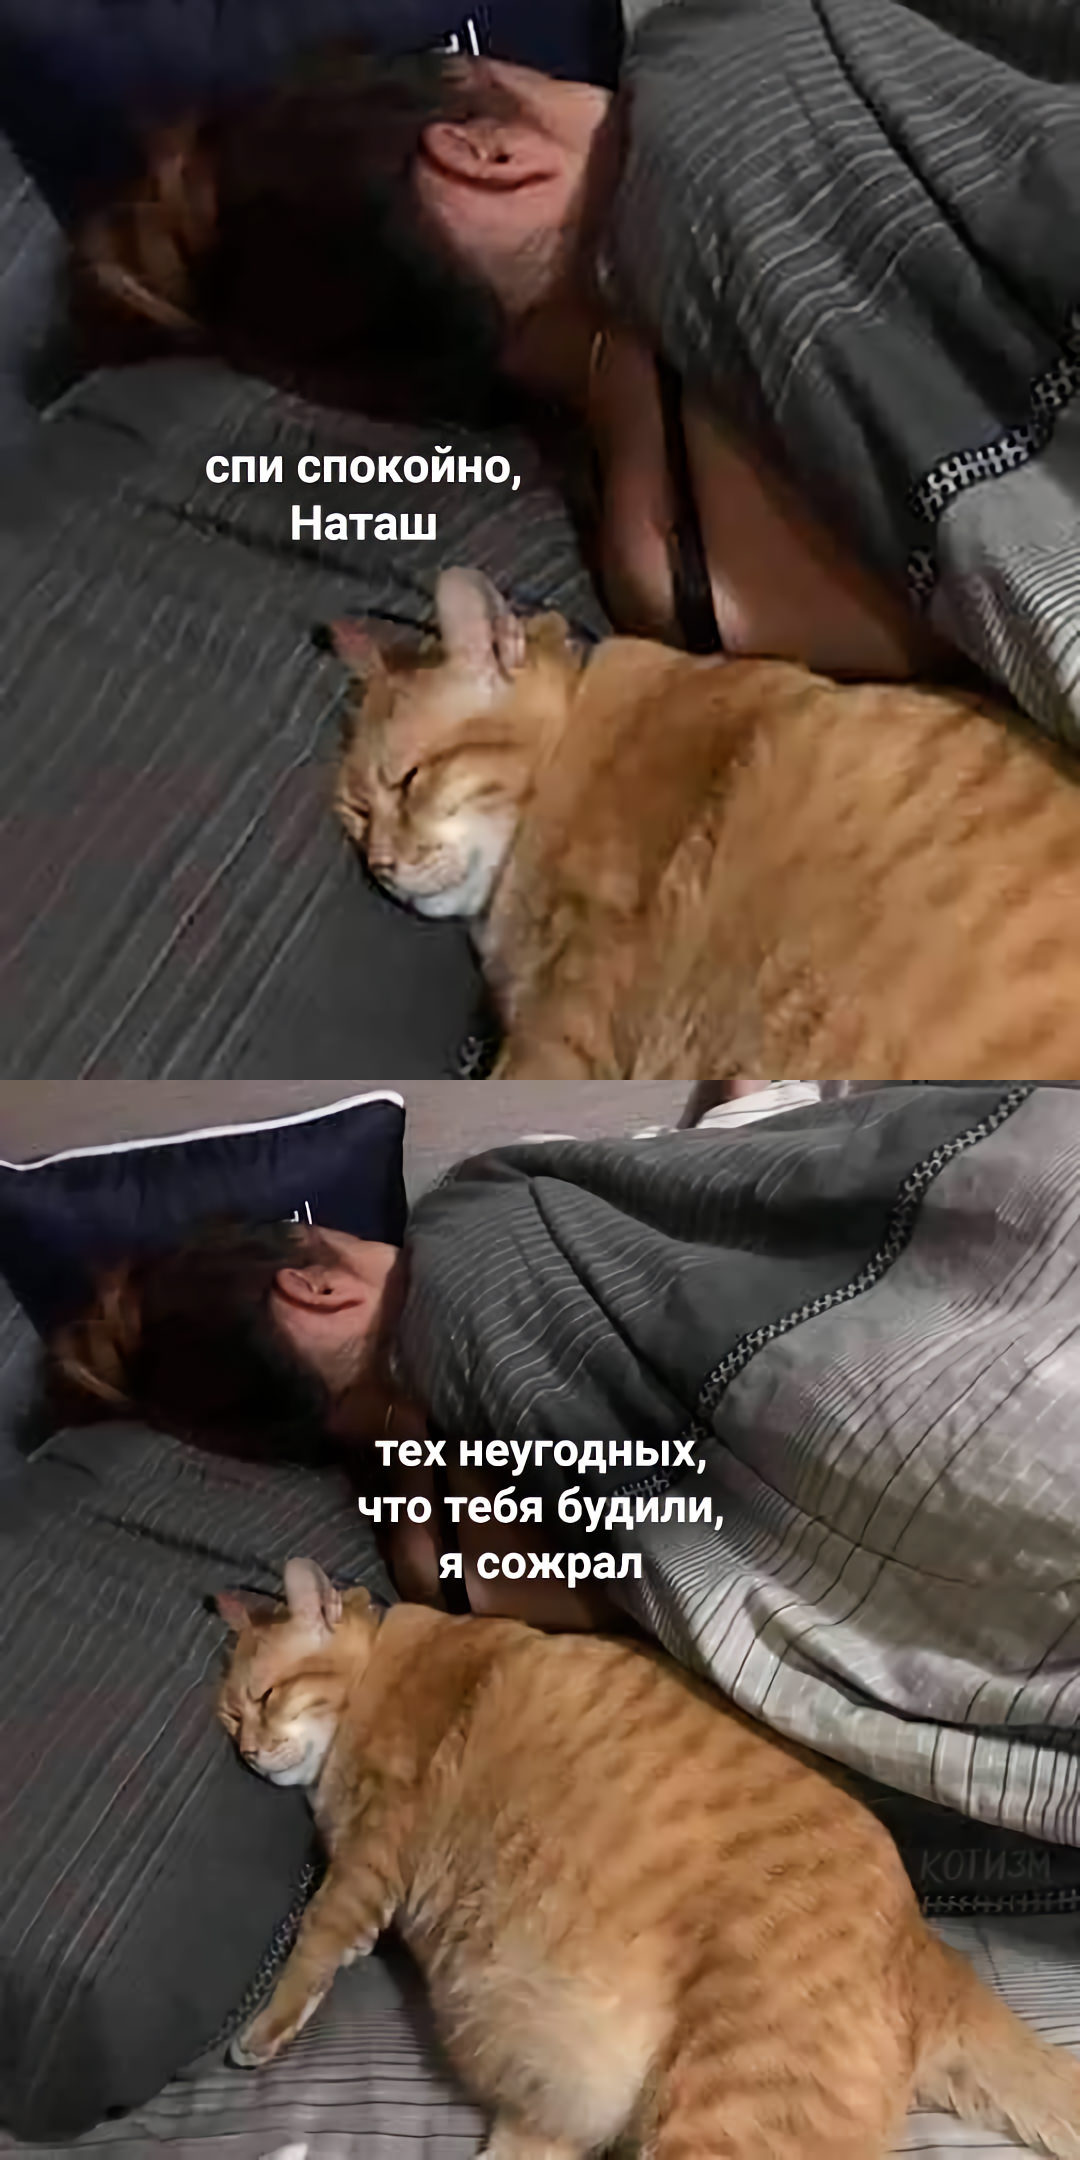 Хватит спать выходи на улицу. Спокойной ночи толстый котик. Наташа спи. Наташ ты спишь.